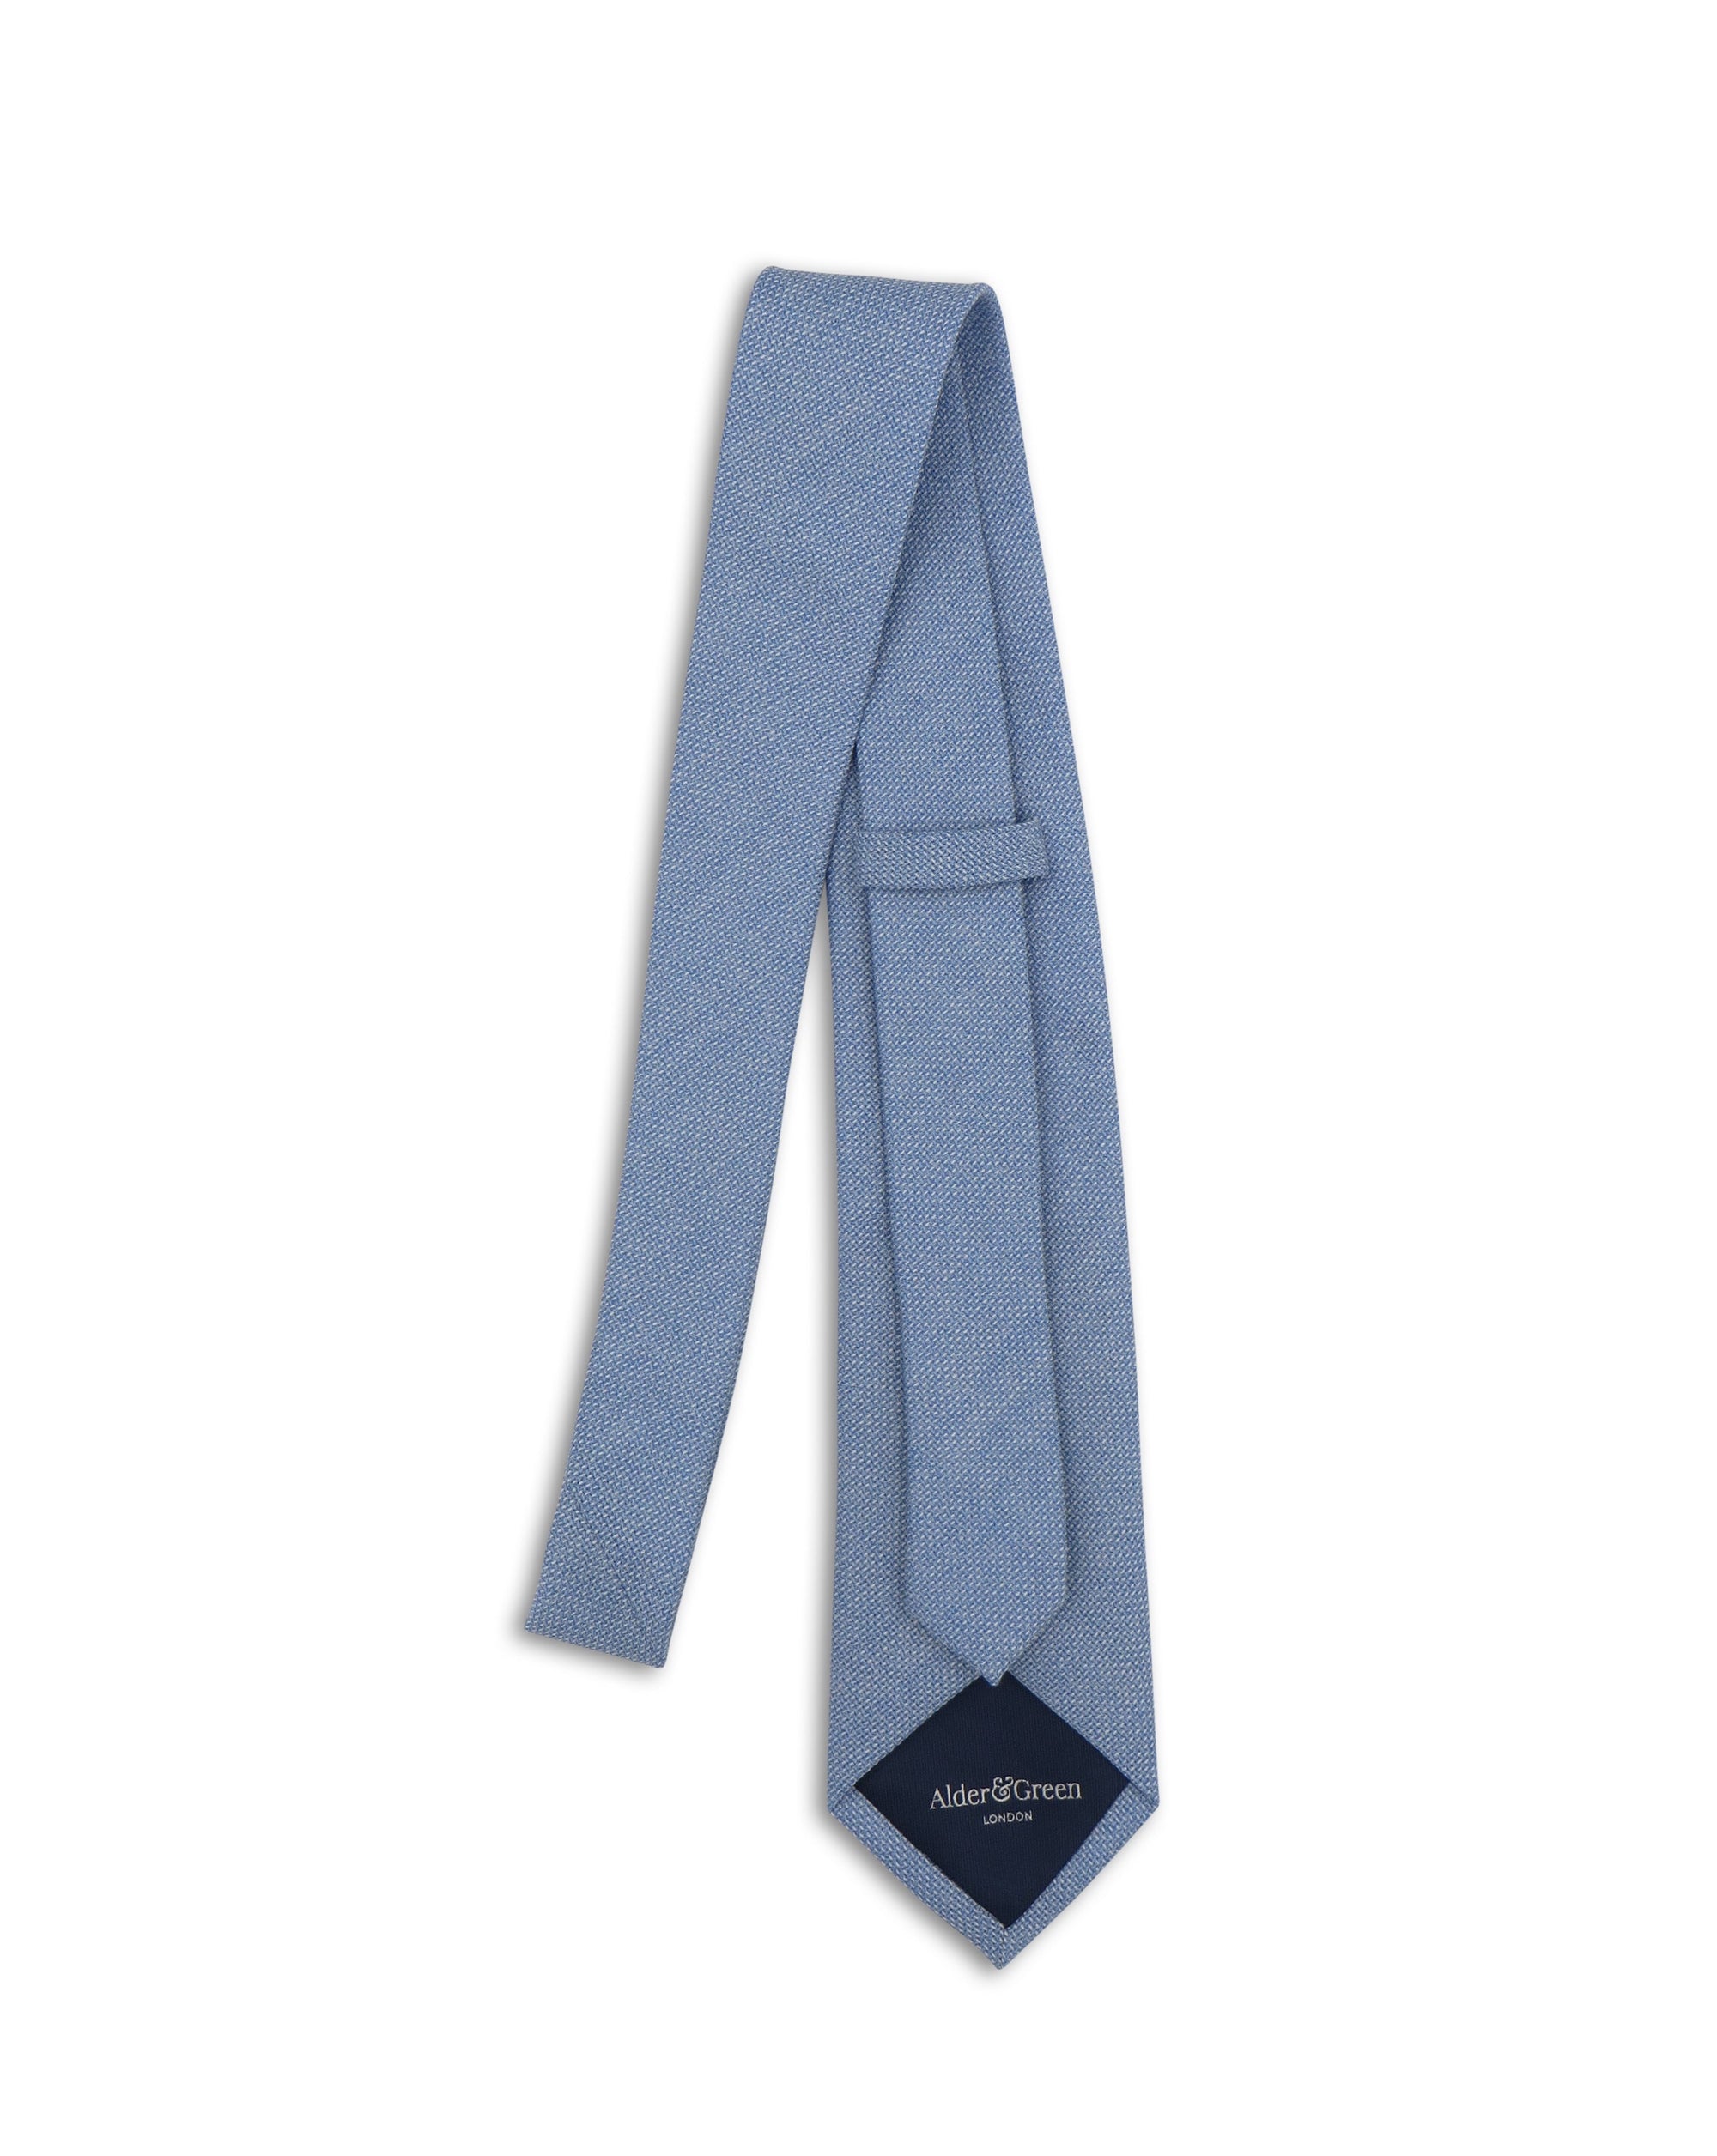 Alder & Green Baby Blue Wool Tie